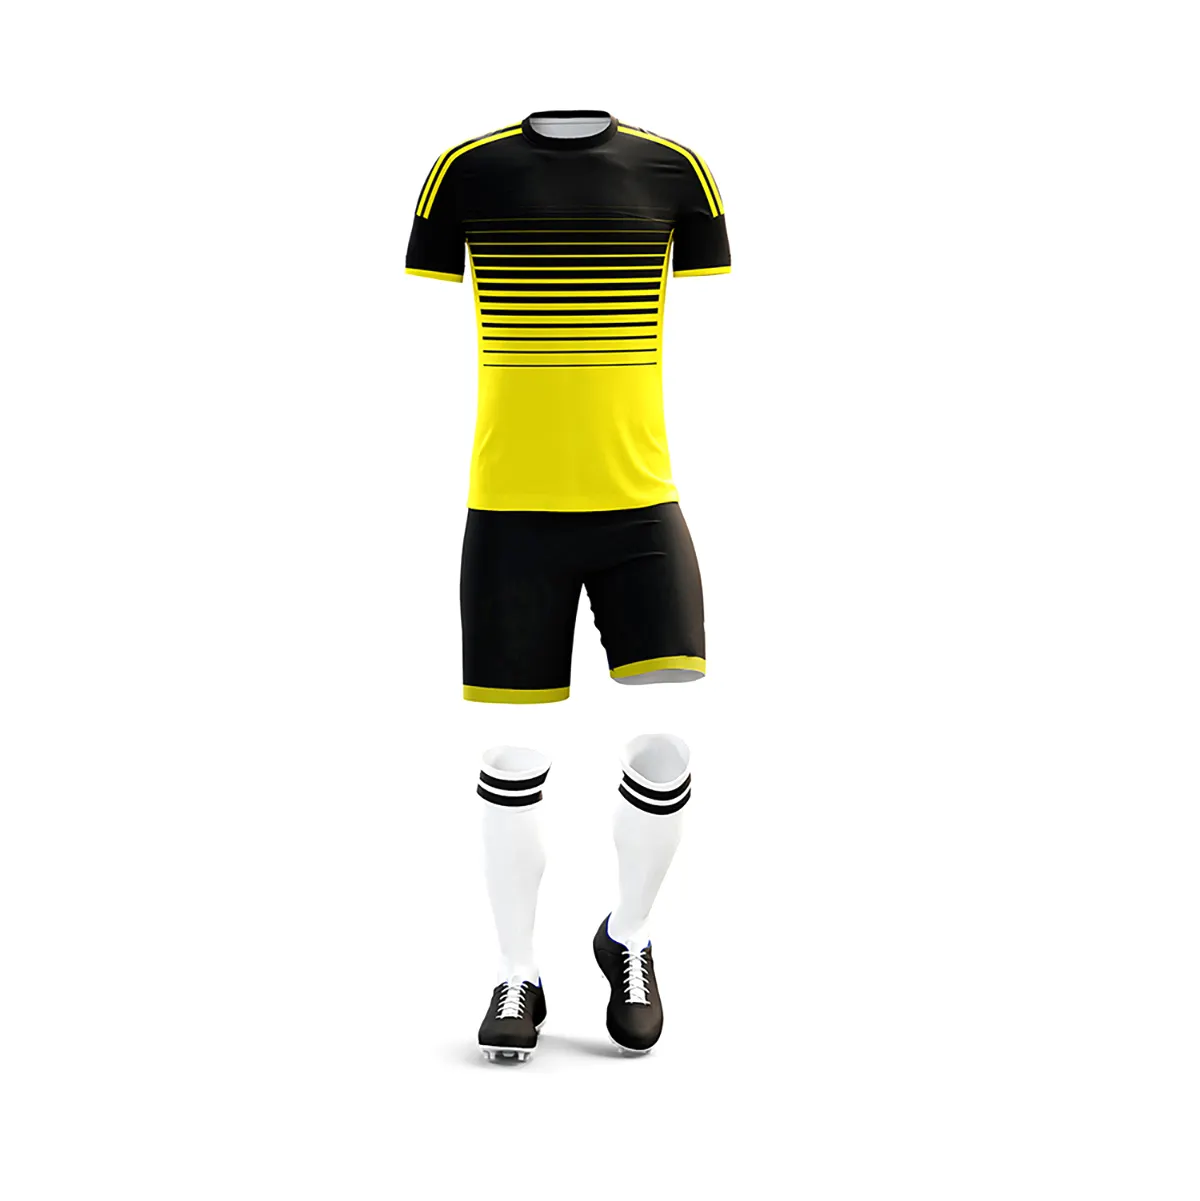 Nuevo OEM Camiseta de fútbol de alta calidad Personalizado Nuevo diseño Camiseta de fútbol Uniformes Conjunto de dos piezas